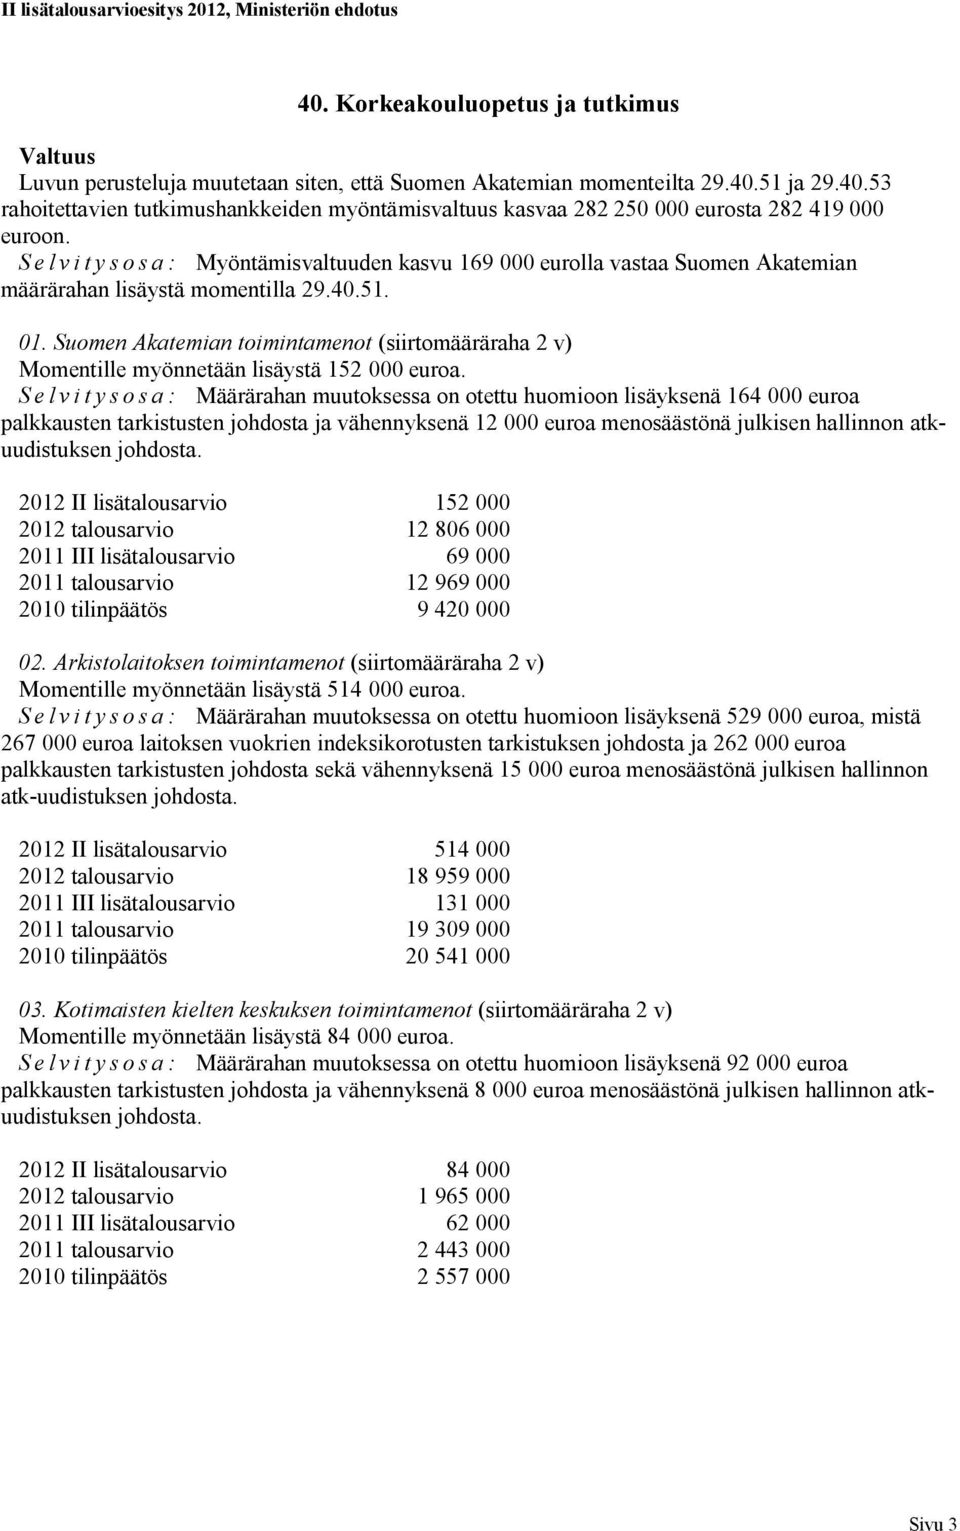 Suomen Akatemian toimintamenot (siirtomääräraha 2 v) Momentille myönnetään lisäystä 152 000 euroa.